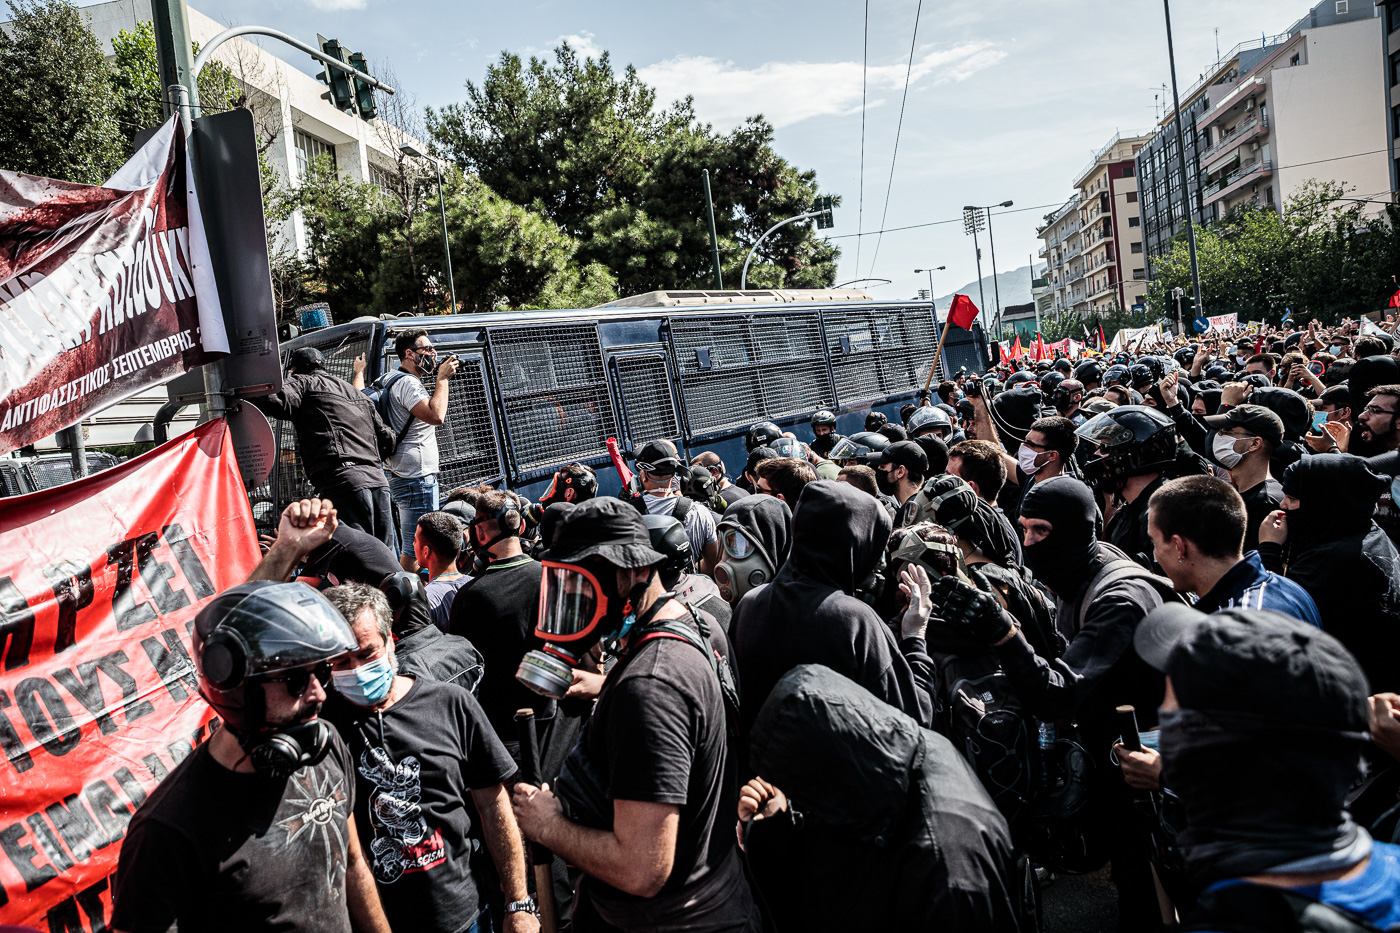 Comencen els avalots entre manifestants i la policia, que fa ús de la tanqueta amb canons d’aigua a pressió